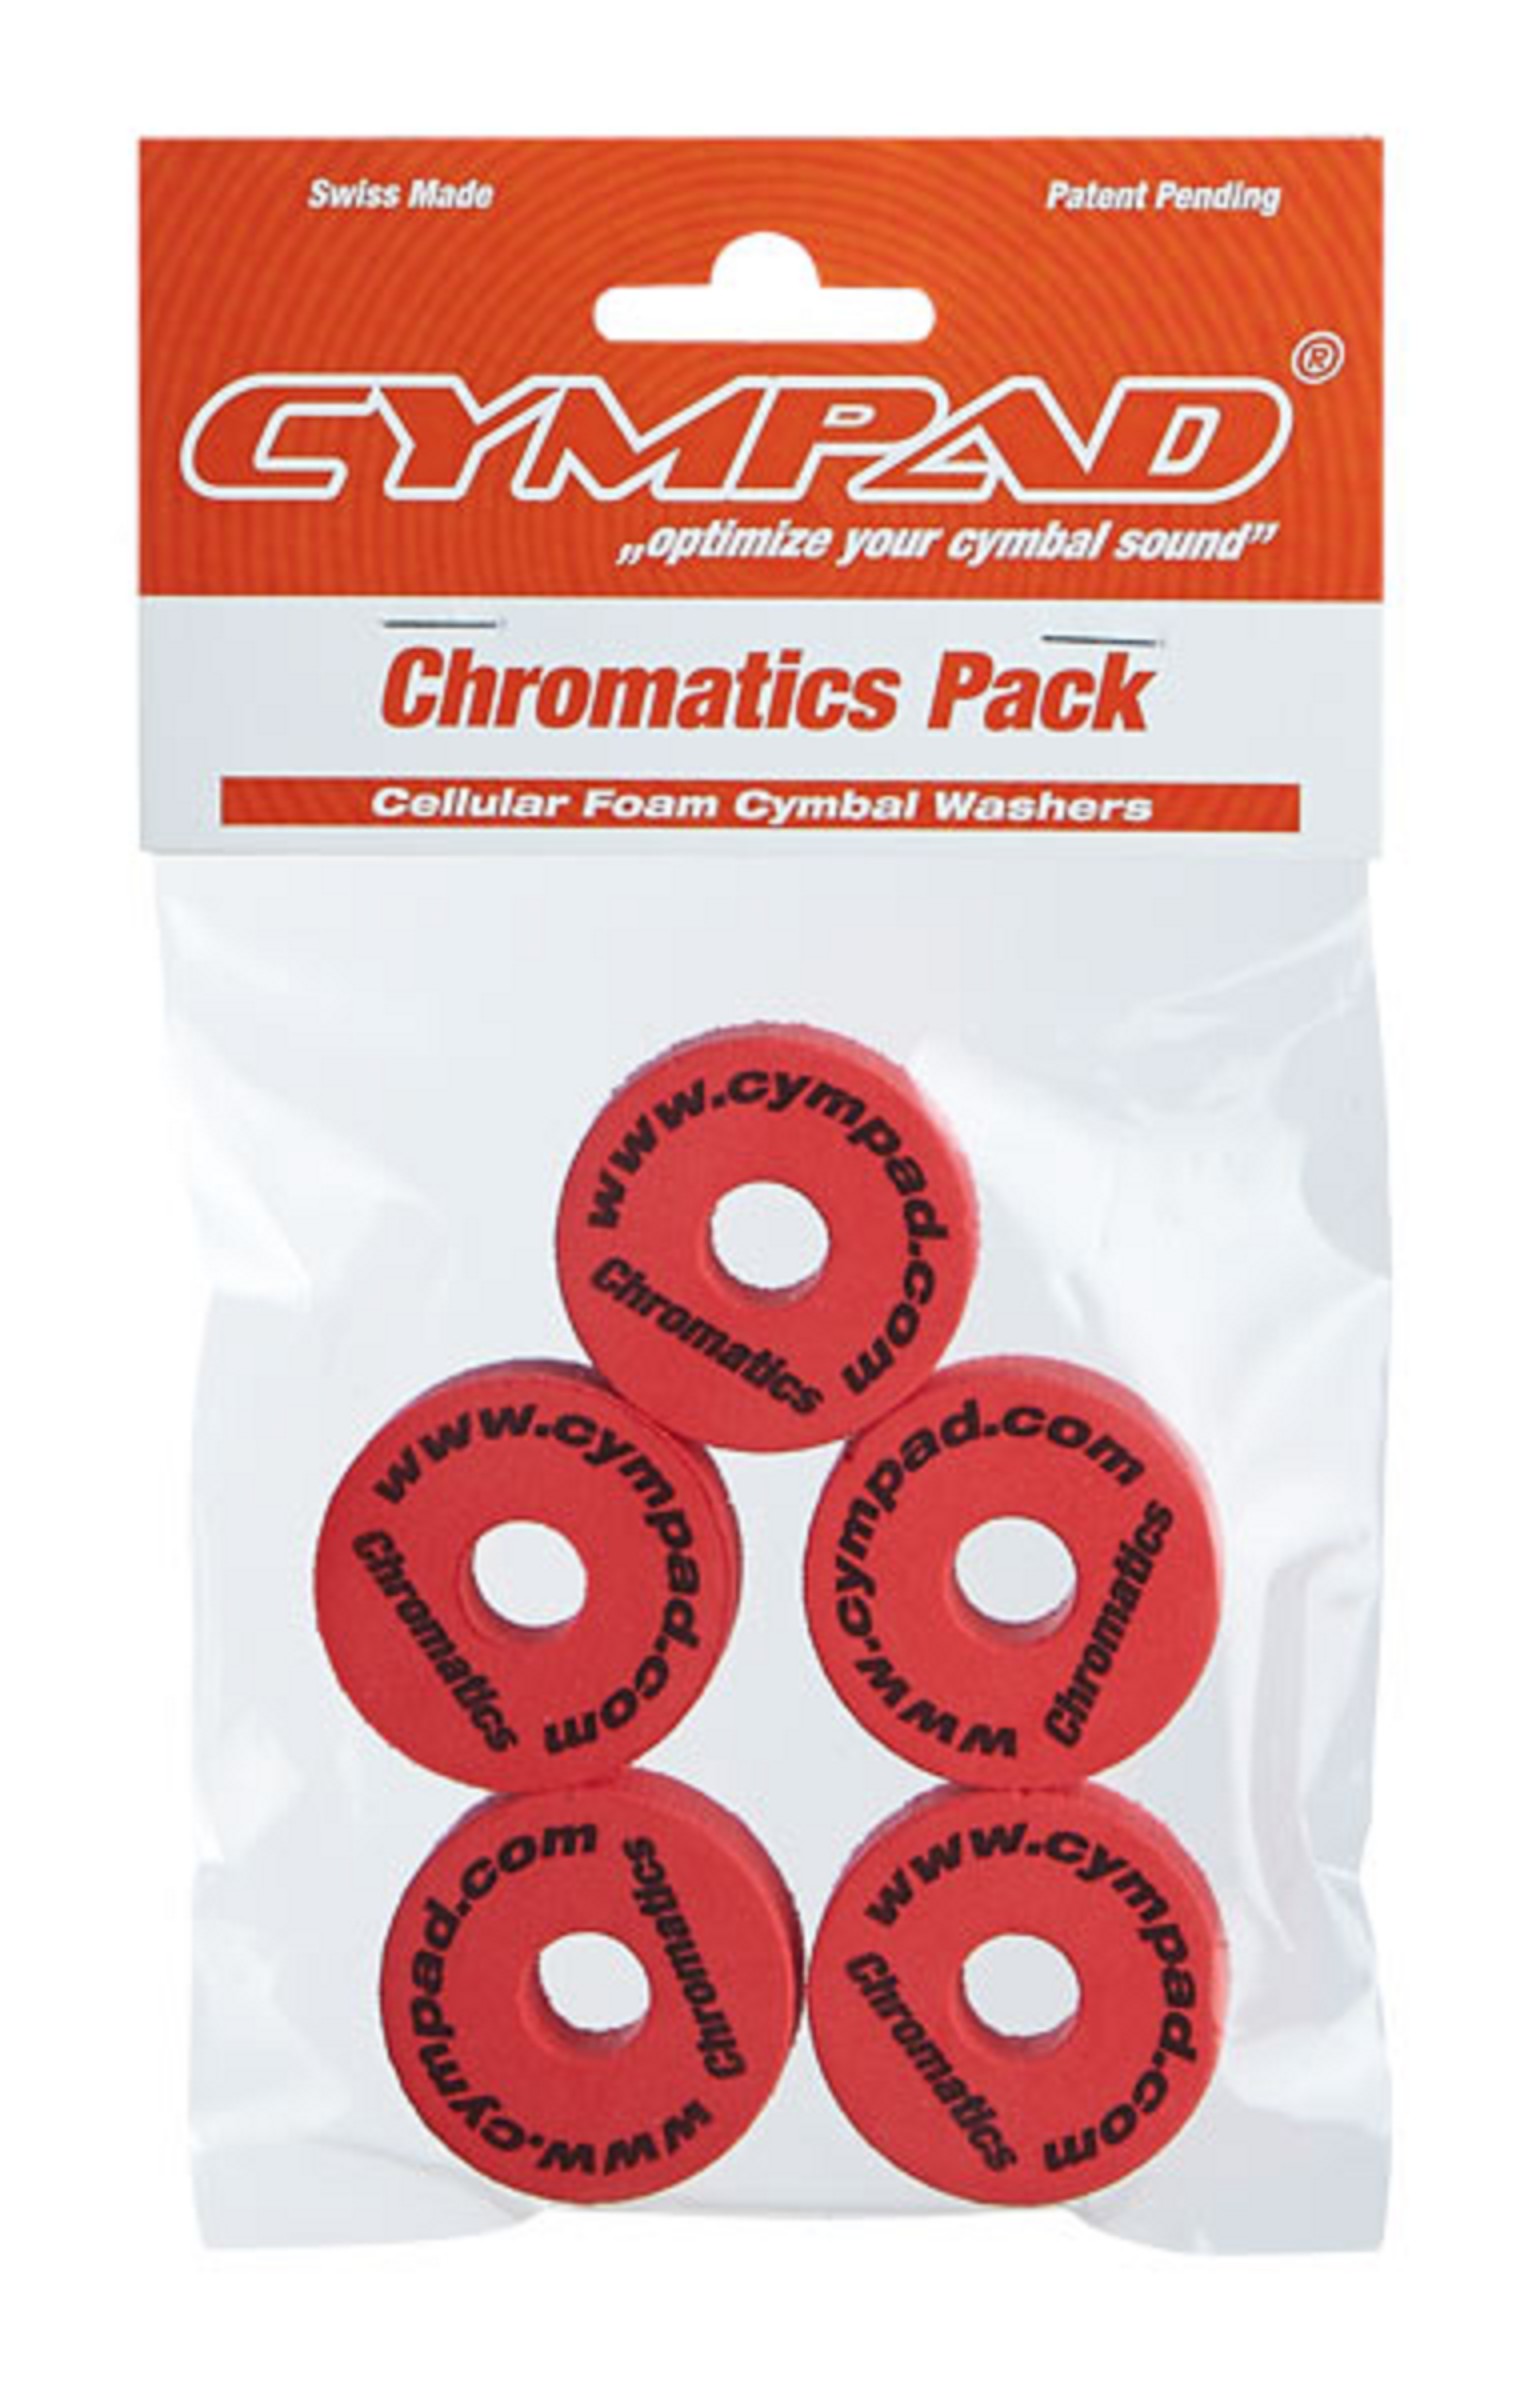 Cympad Chromatics Rot Beckenfilz-Set 5 stück